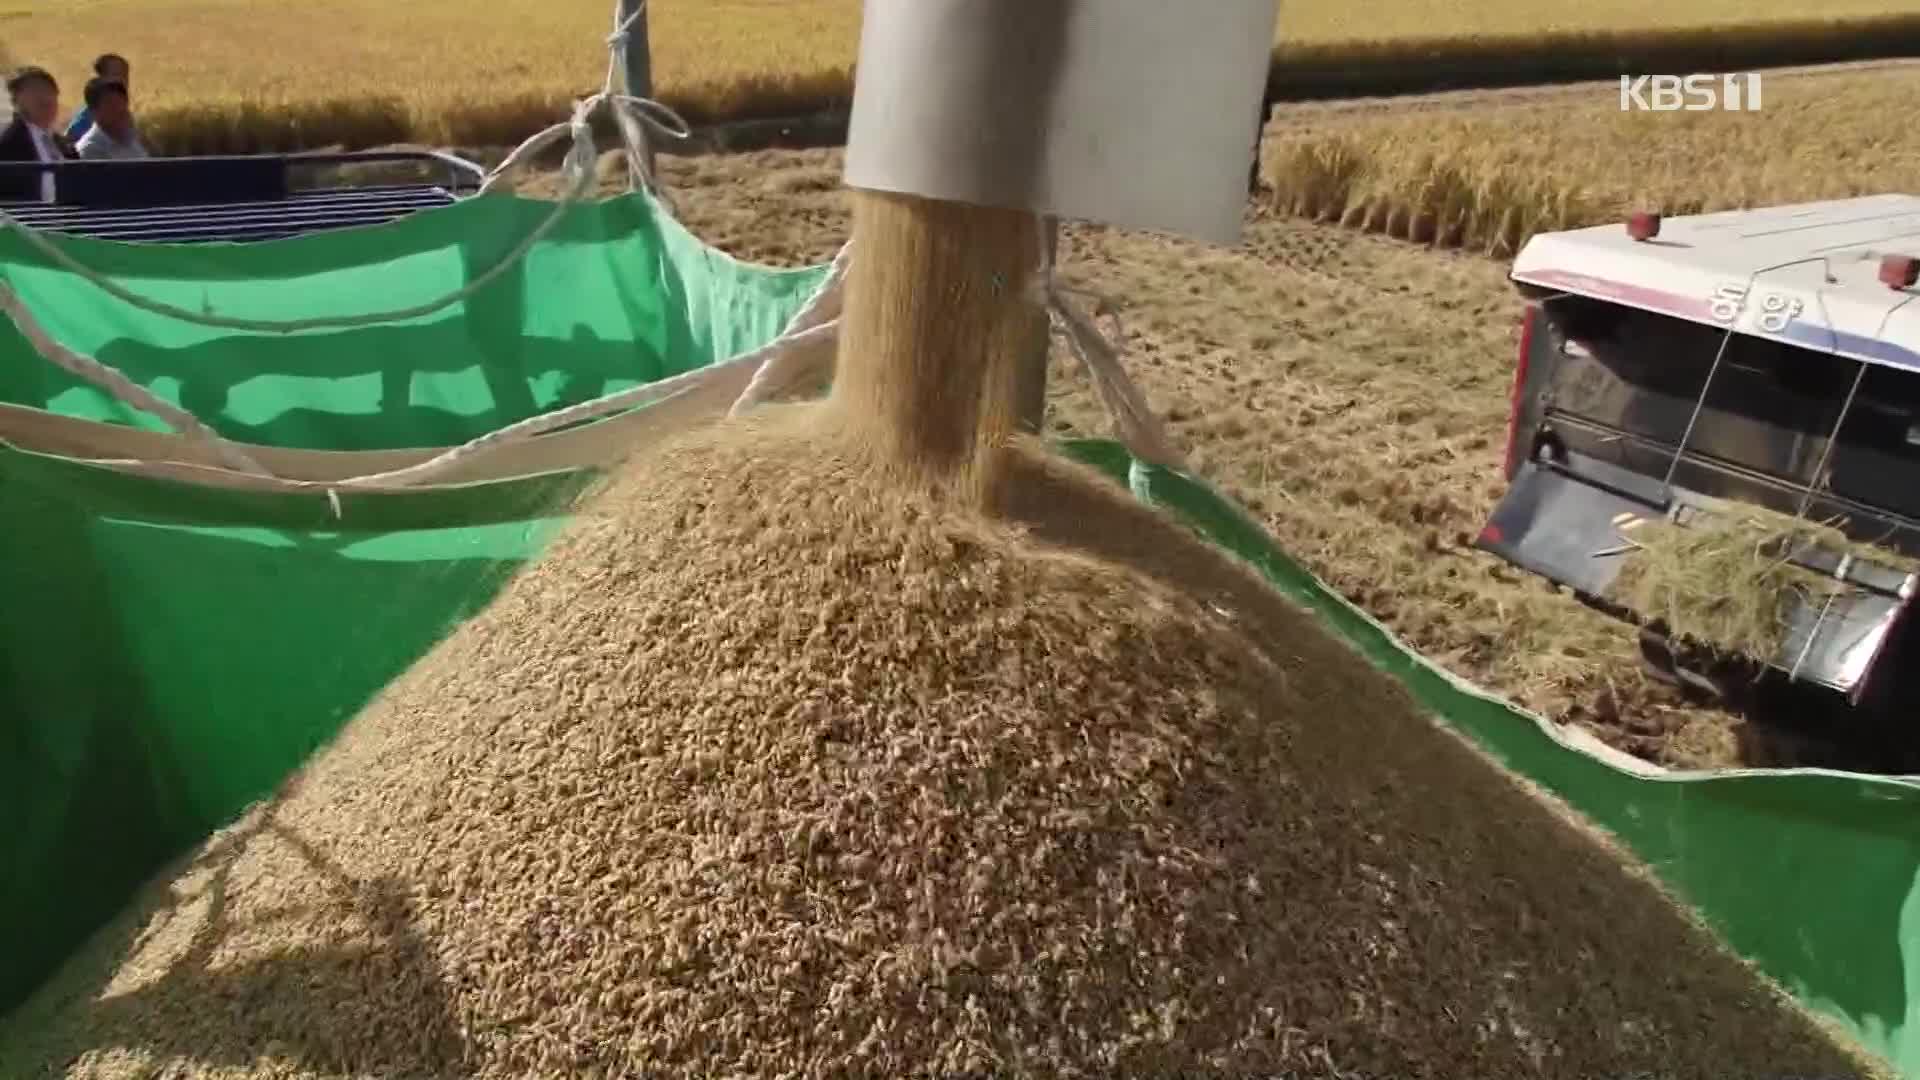 쌀값 1년 전보다 20%↑…벼 재배면적도 20년 만에 증가 전망